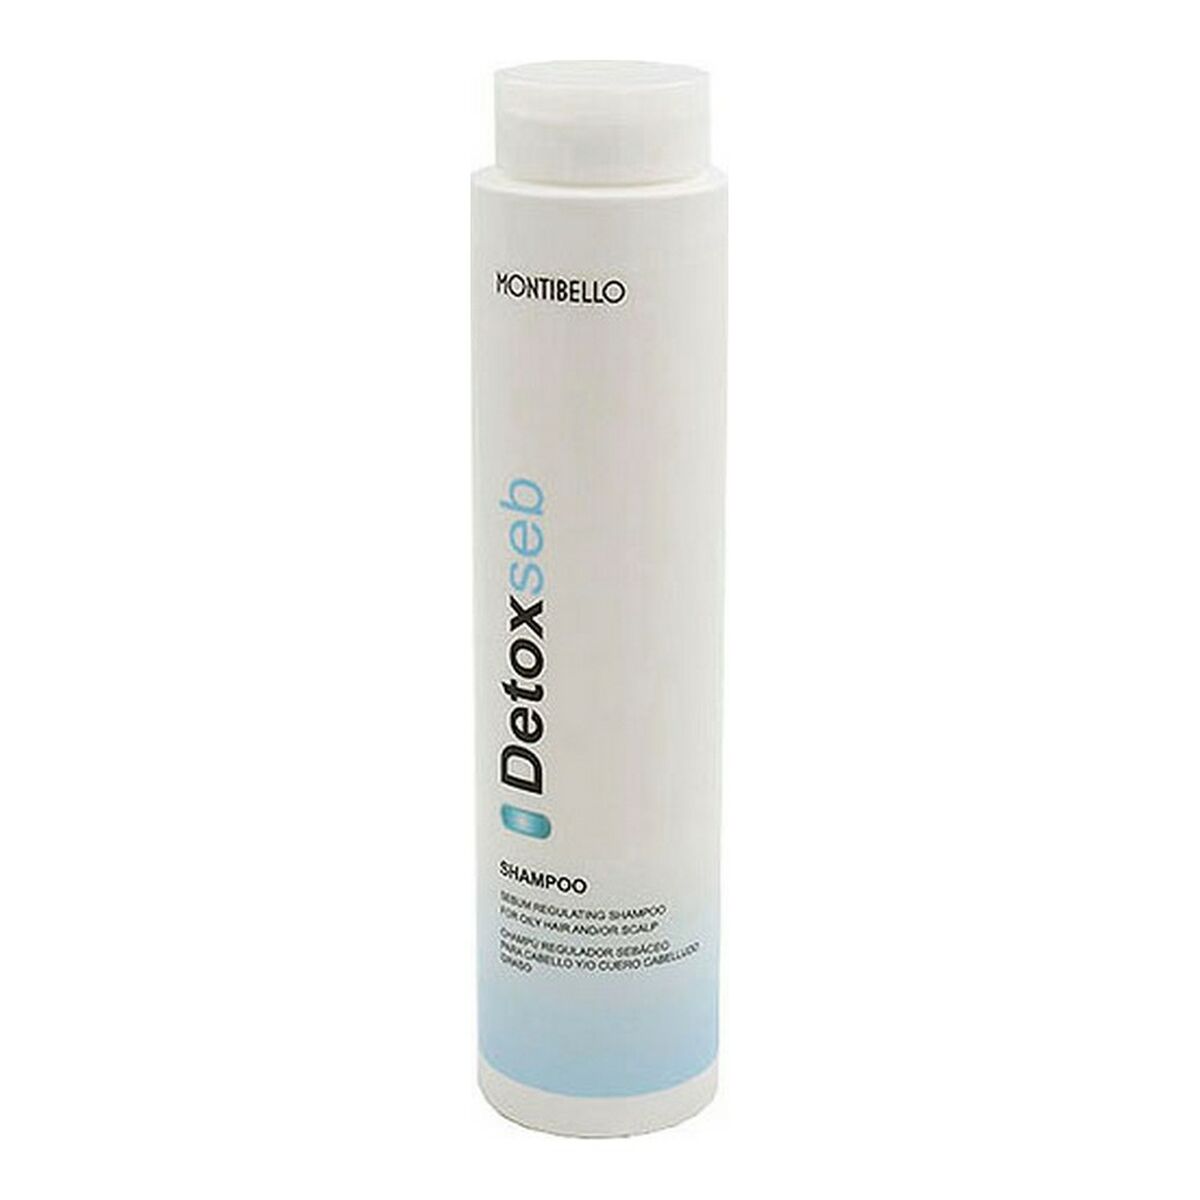 Osta tuote Shampoo Detoxseb Montibello verkkokaupastamme Korhone: Terveys & Kauneus 10% alennuksella koodilla KORHONE